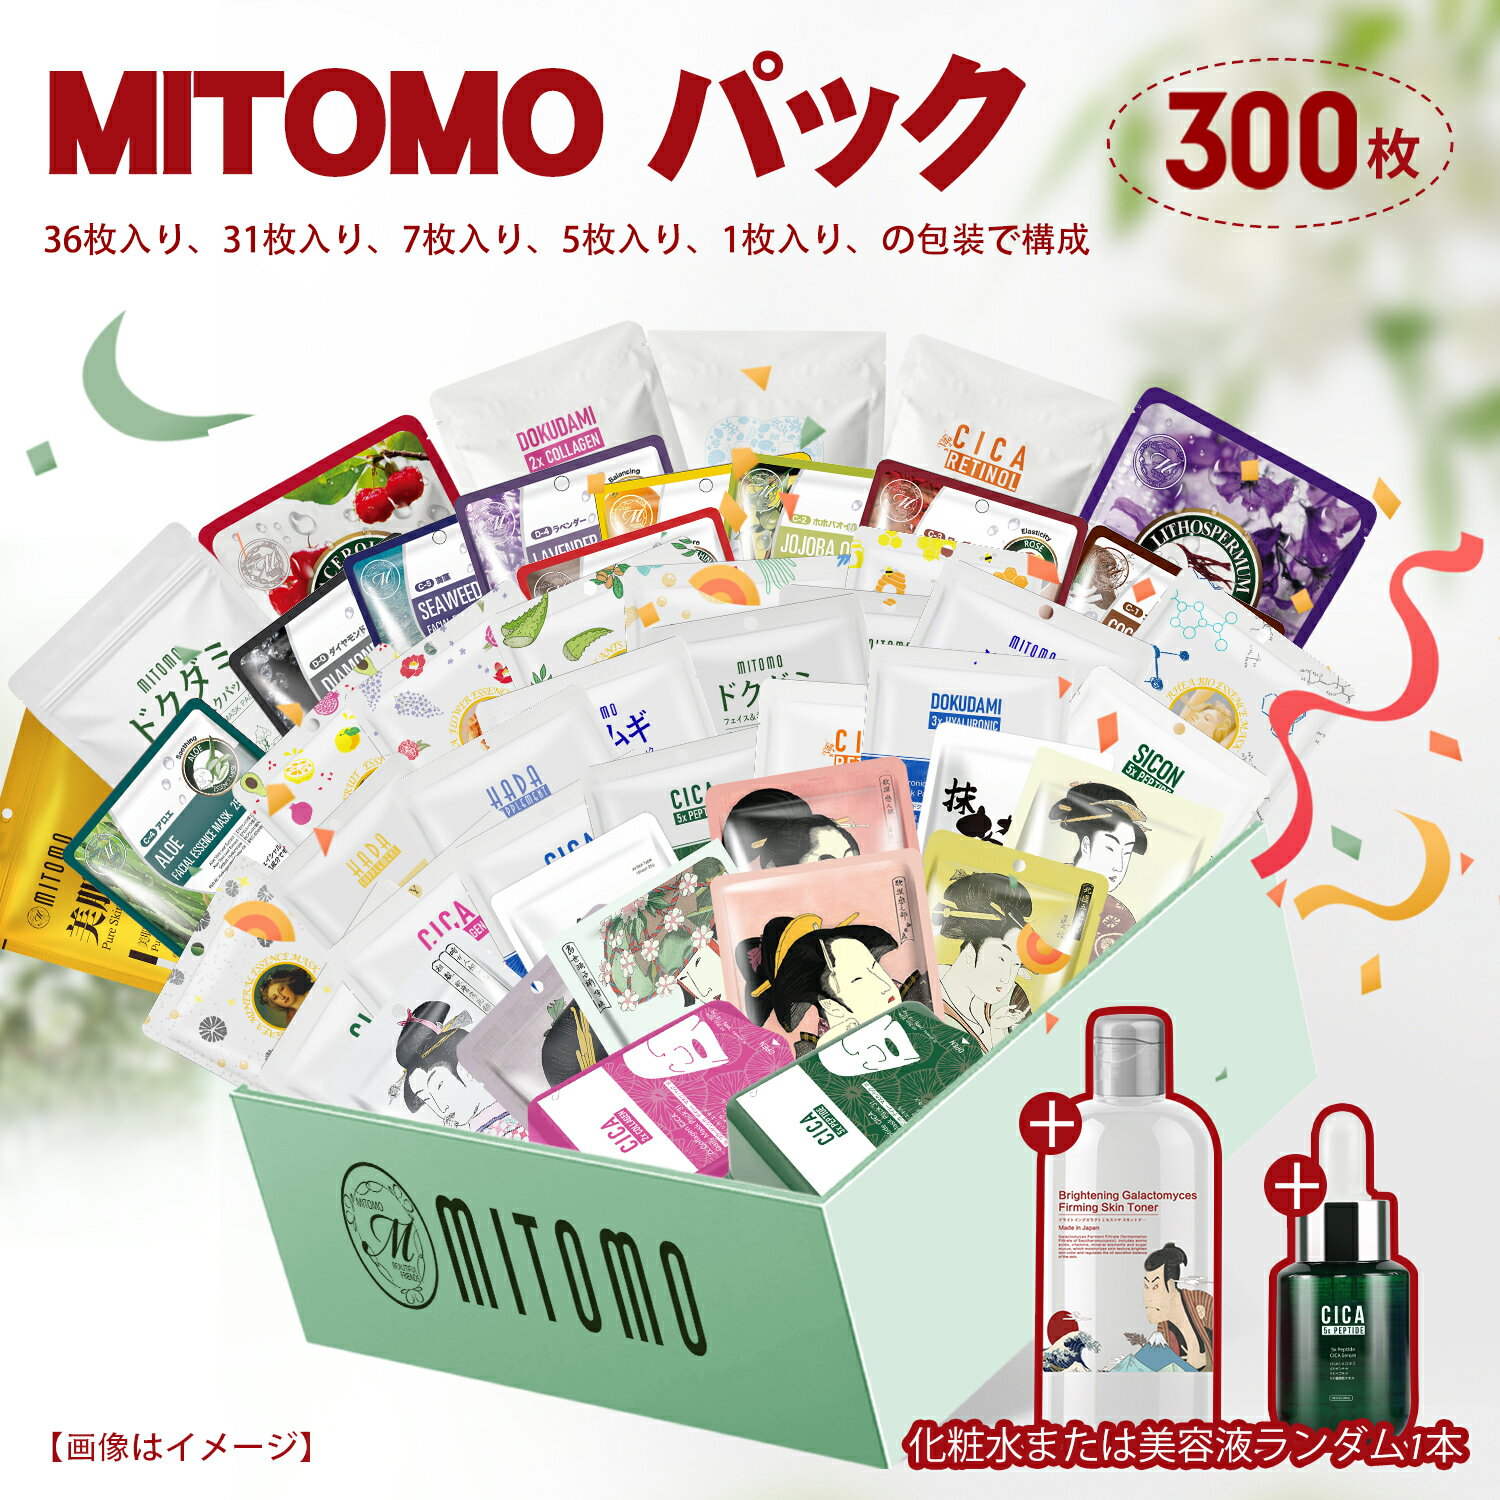 【MITOMO公式】選べる パック300枚福